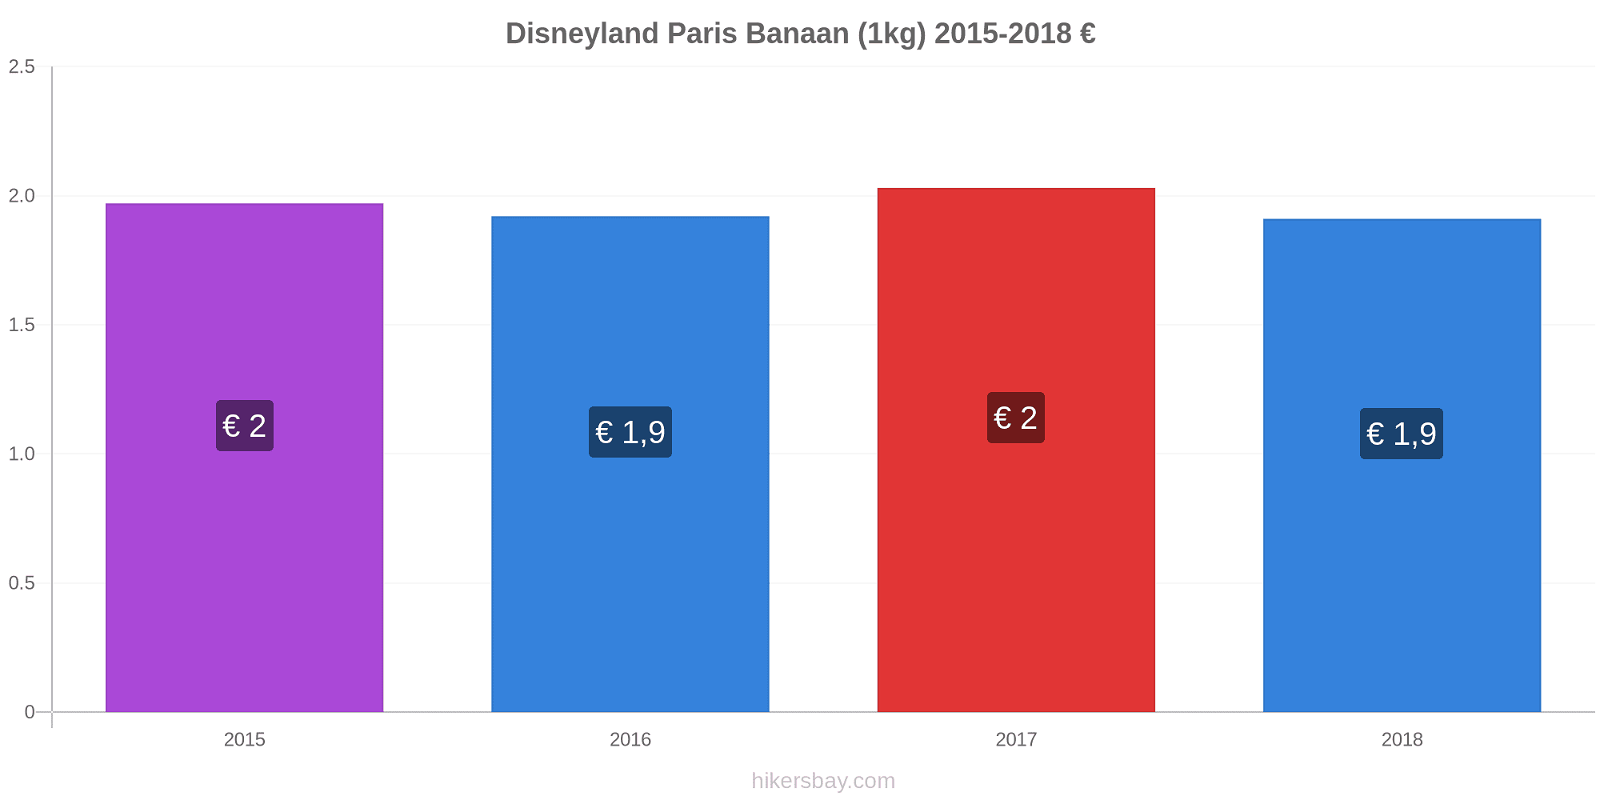 Disneyland Paris prijswijzigingen Banaan (1kg) hikersbay.com